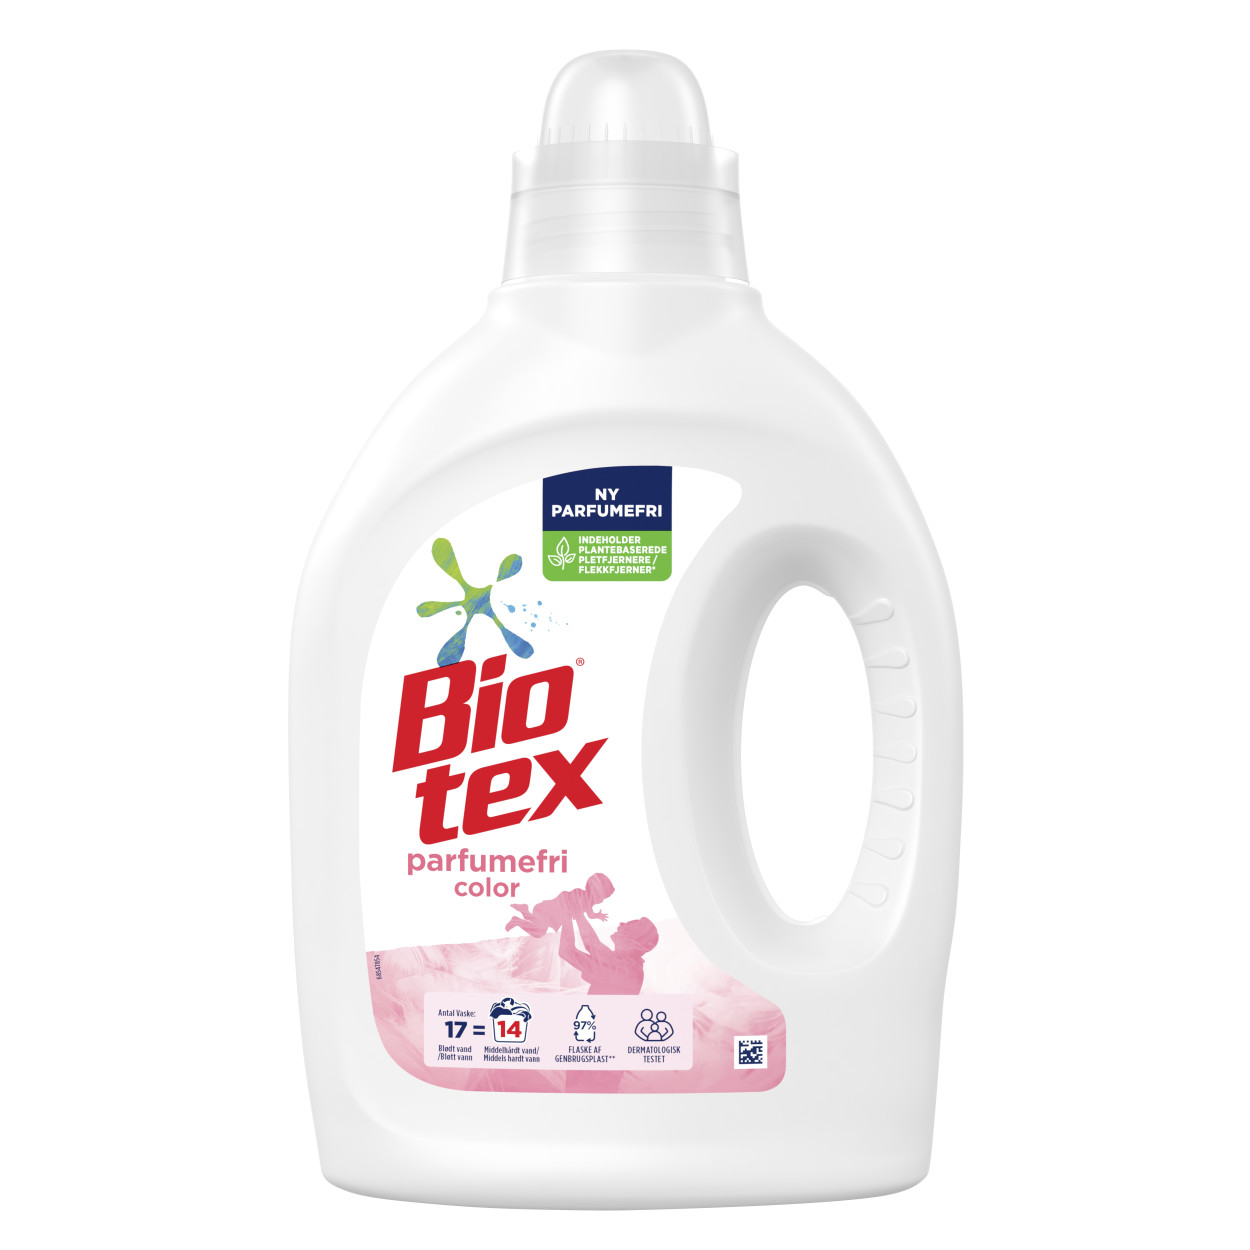 Biotex Parfumefri Vaskemiddel | Bio-tex